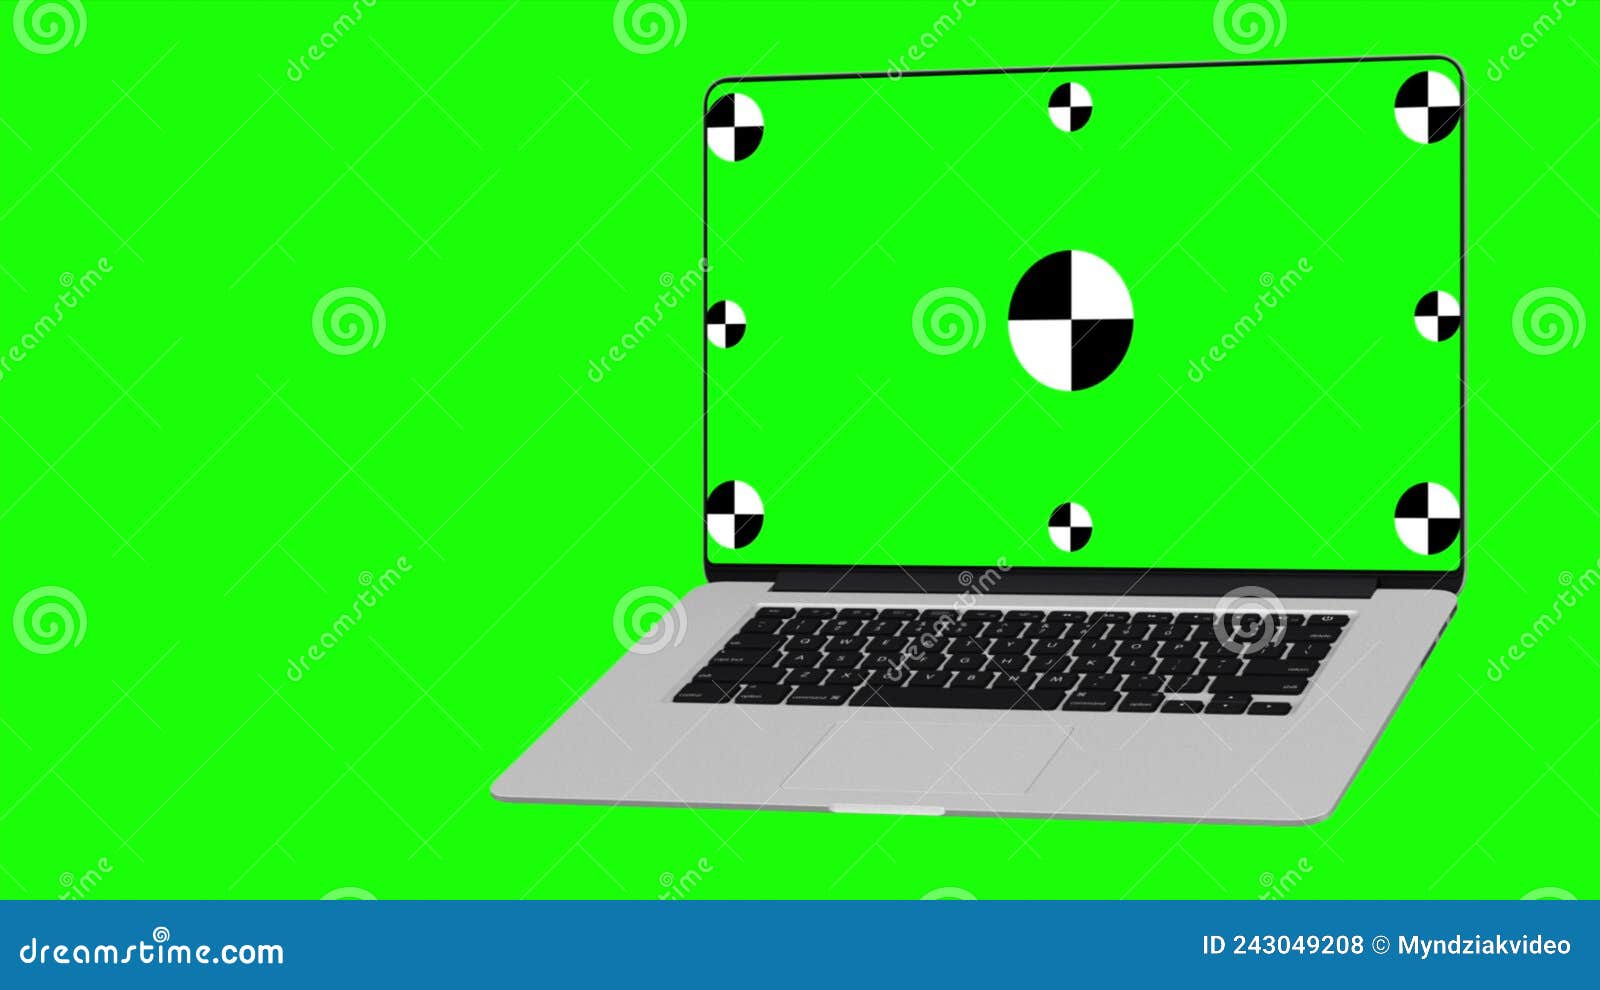 Sở hữu máy tính xách tay mở mượt mà với màn hình xanh trên nền xanh chroma key sẽ làm bạn cảm thấy như đang sở hữu một phòng thu truyền hình chuyên nghiệp. Khả năng chỉnh sửa và sản xuất hình ảnh chất lượng cao sẽ trở nên dễ dàng hơn bao giờ hết.